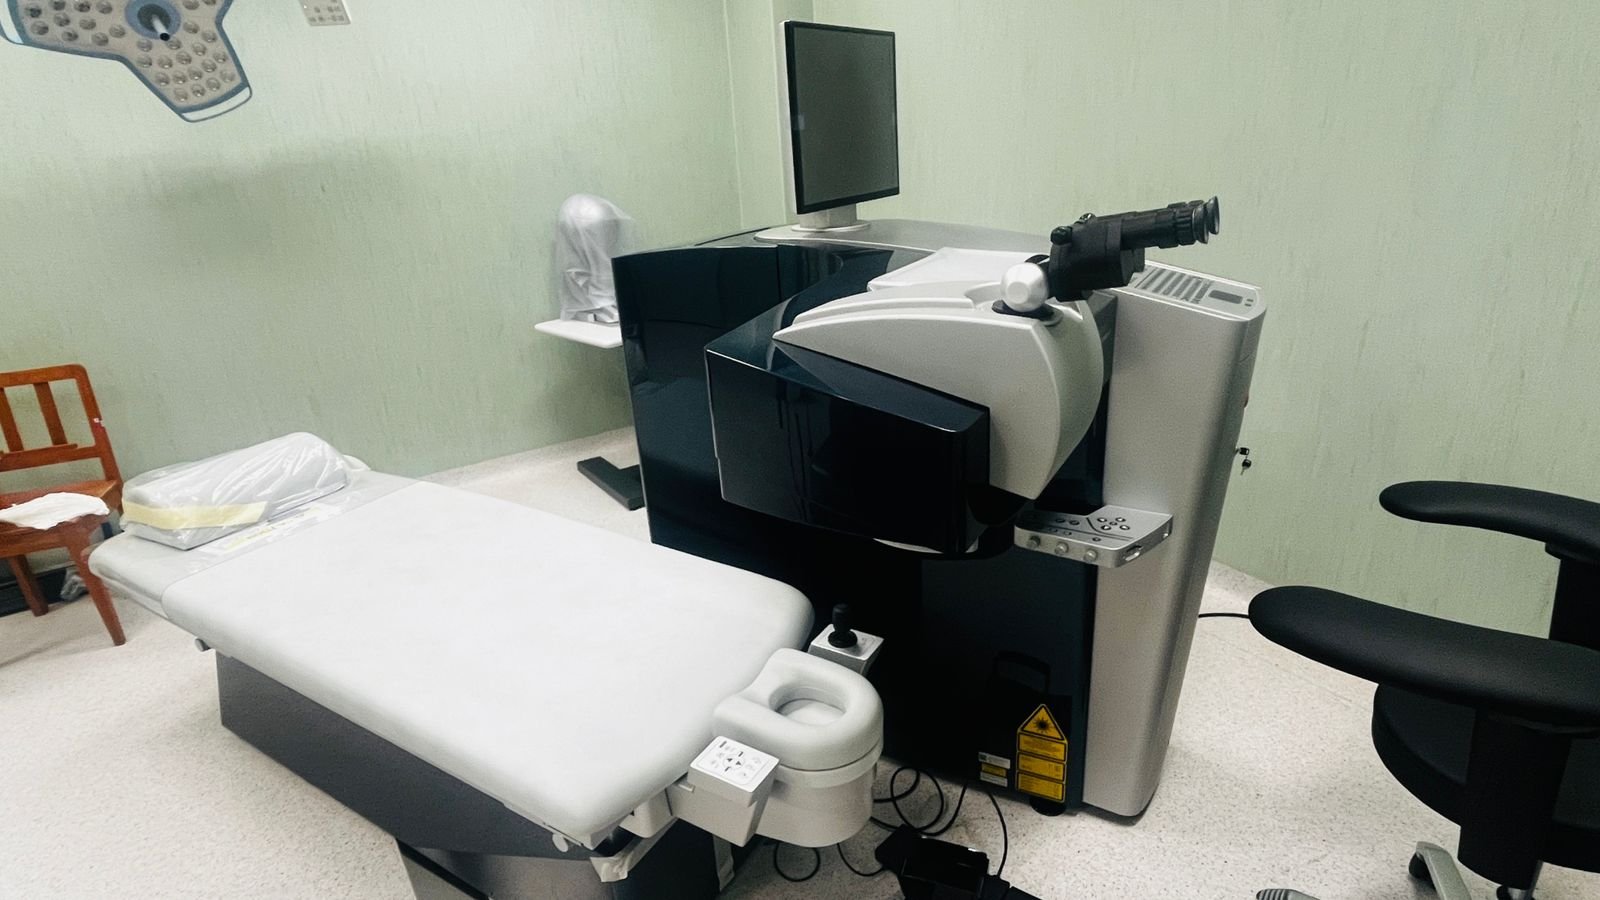 Moderno equipo de oftalmología no tiene uso en el Hospital Regional Hermilio Valdizán por falta de pacientes